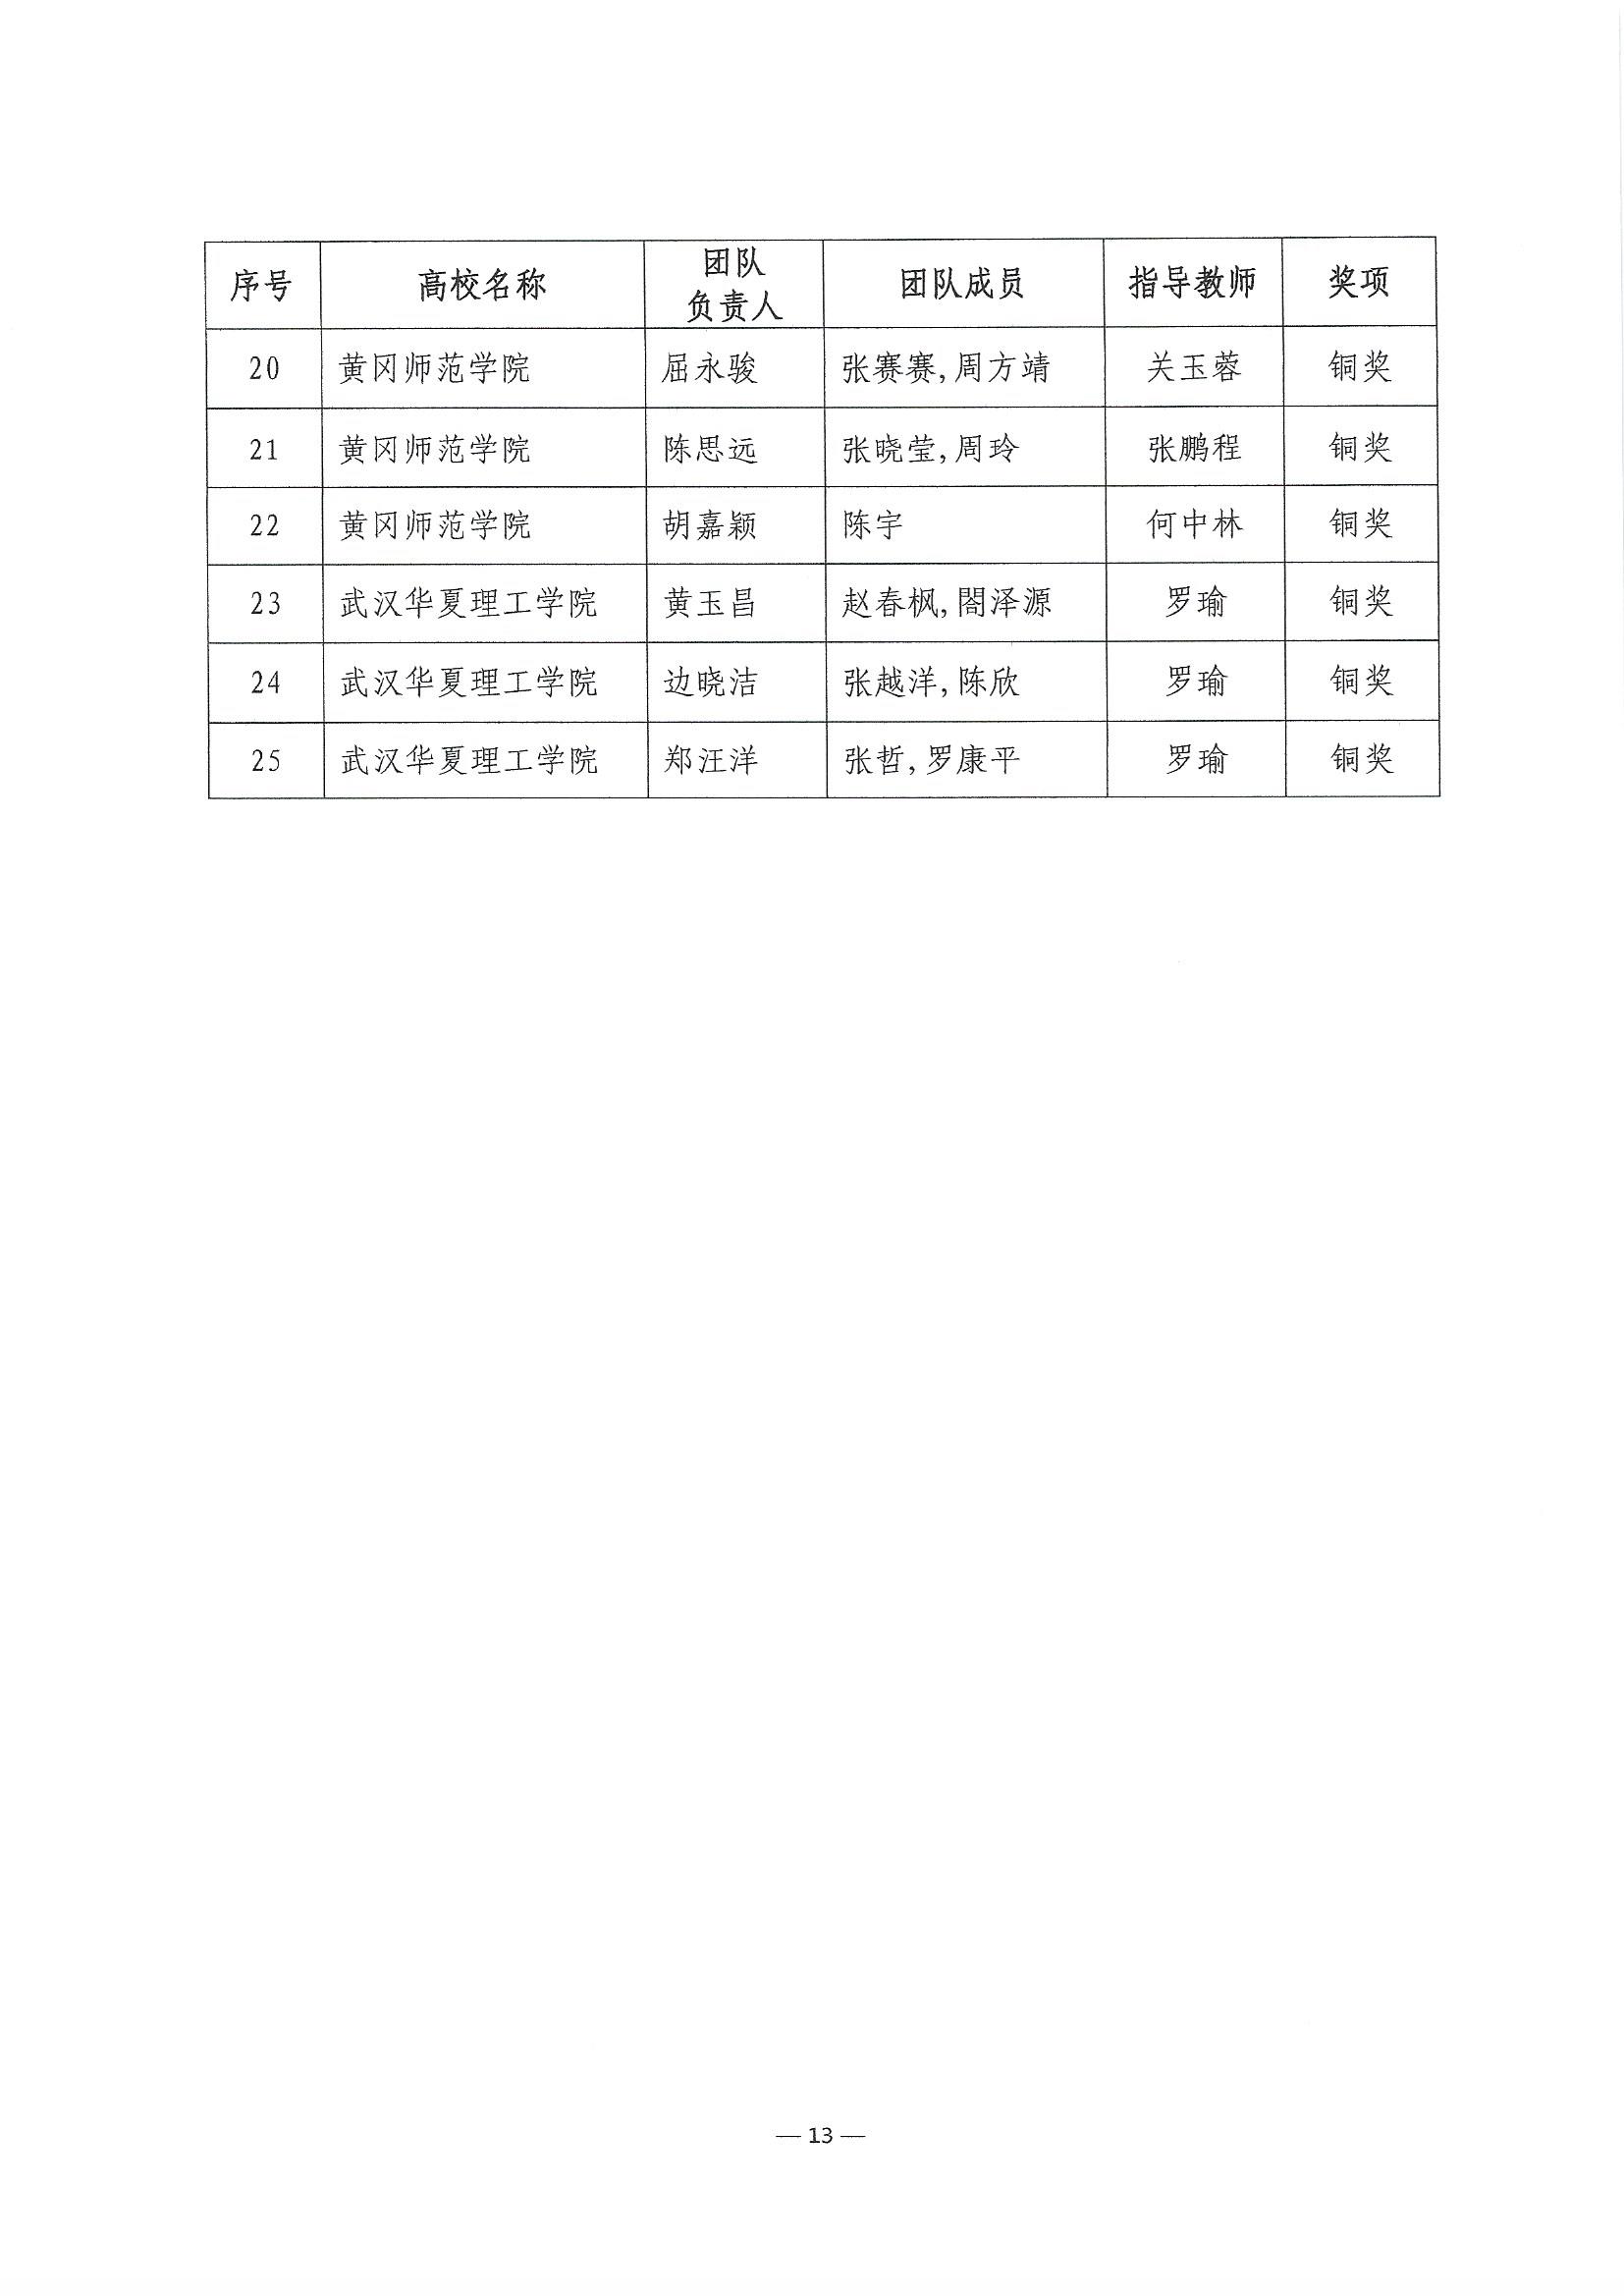 2023.6.8关于公布第二届湖北省大学生信创大赛获奖名单的通知(1)_页面_13.jpg